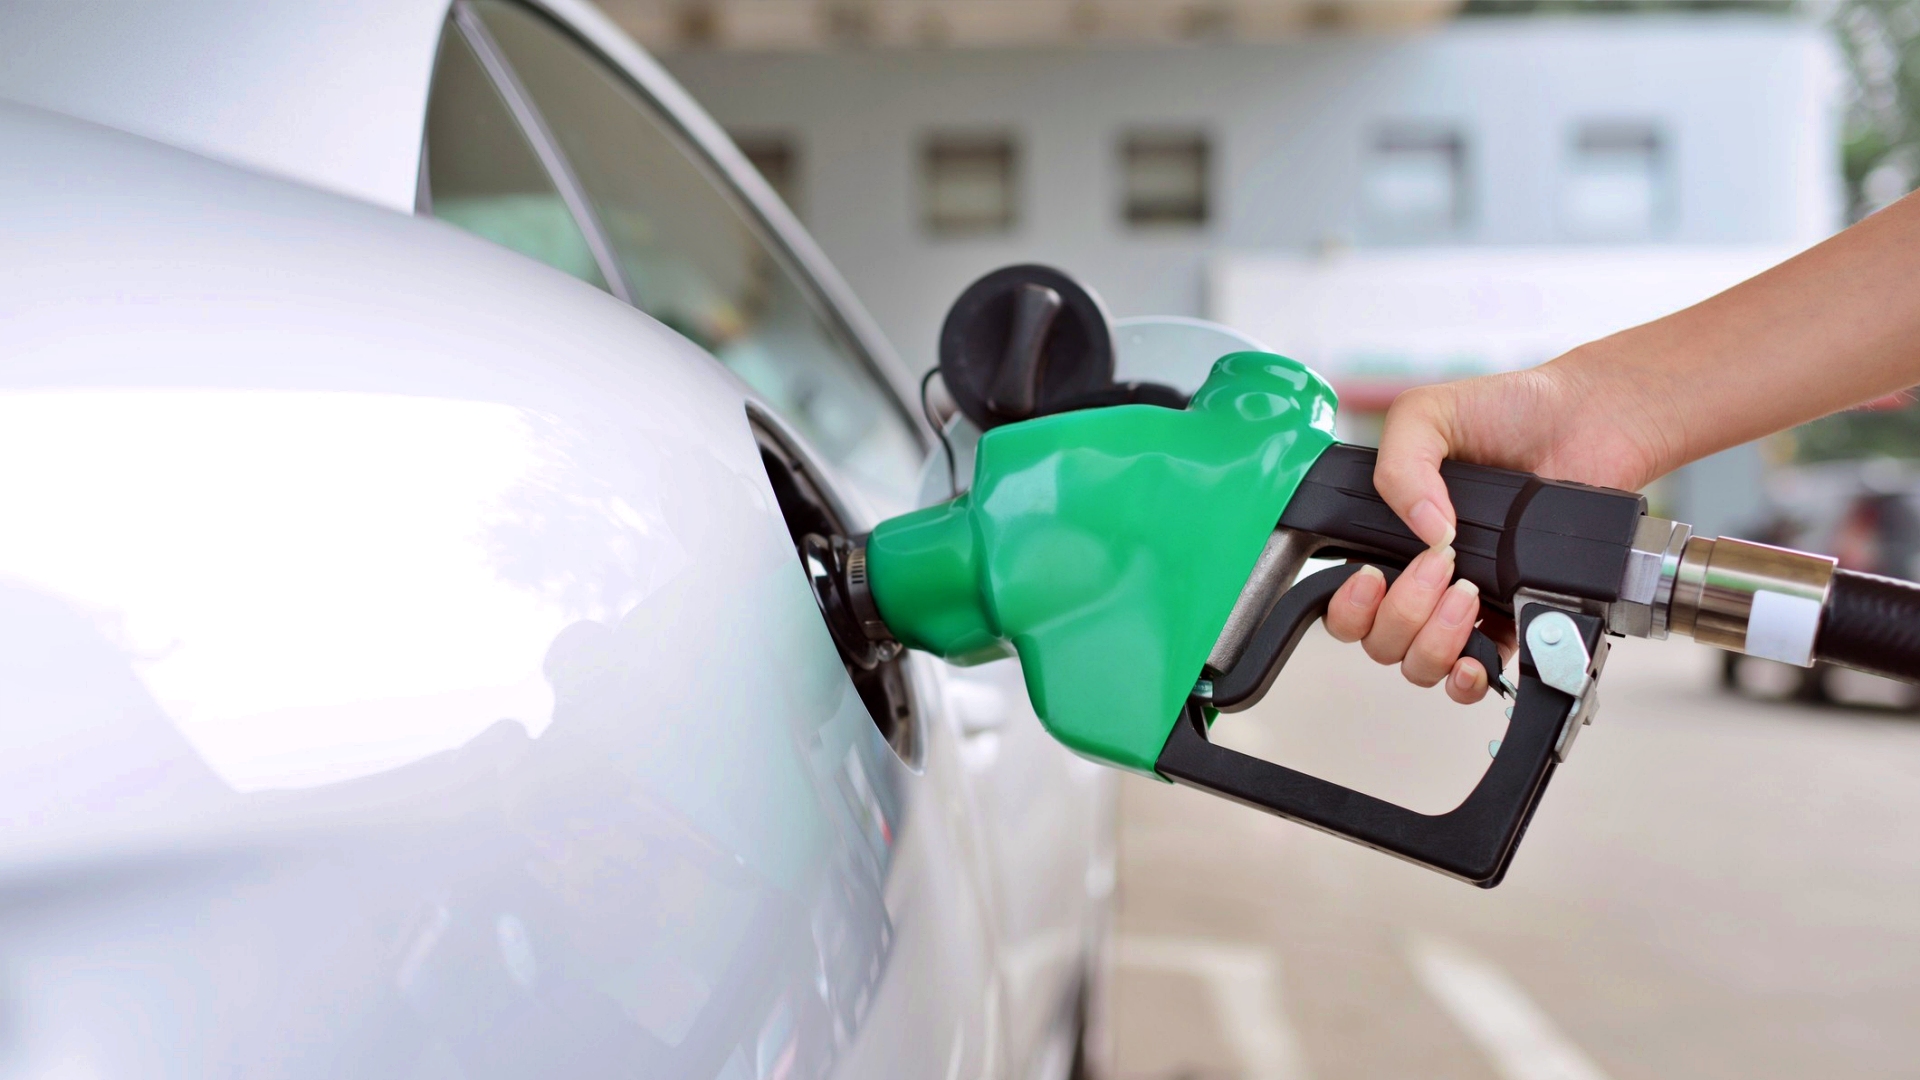 Afinal, qual a importância de uma gasolina de qualidade? - Blog